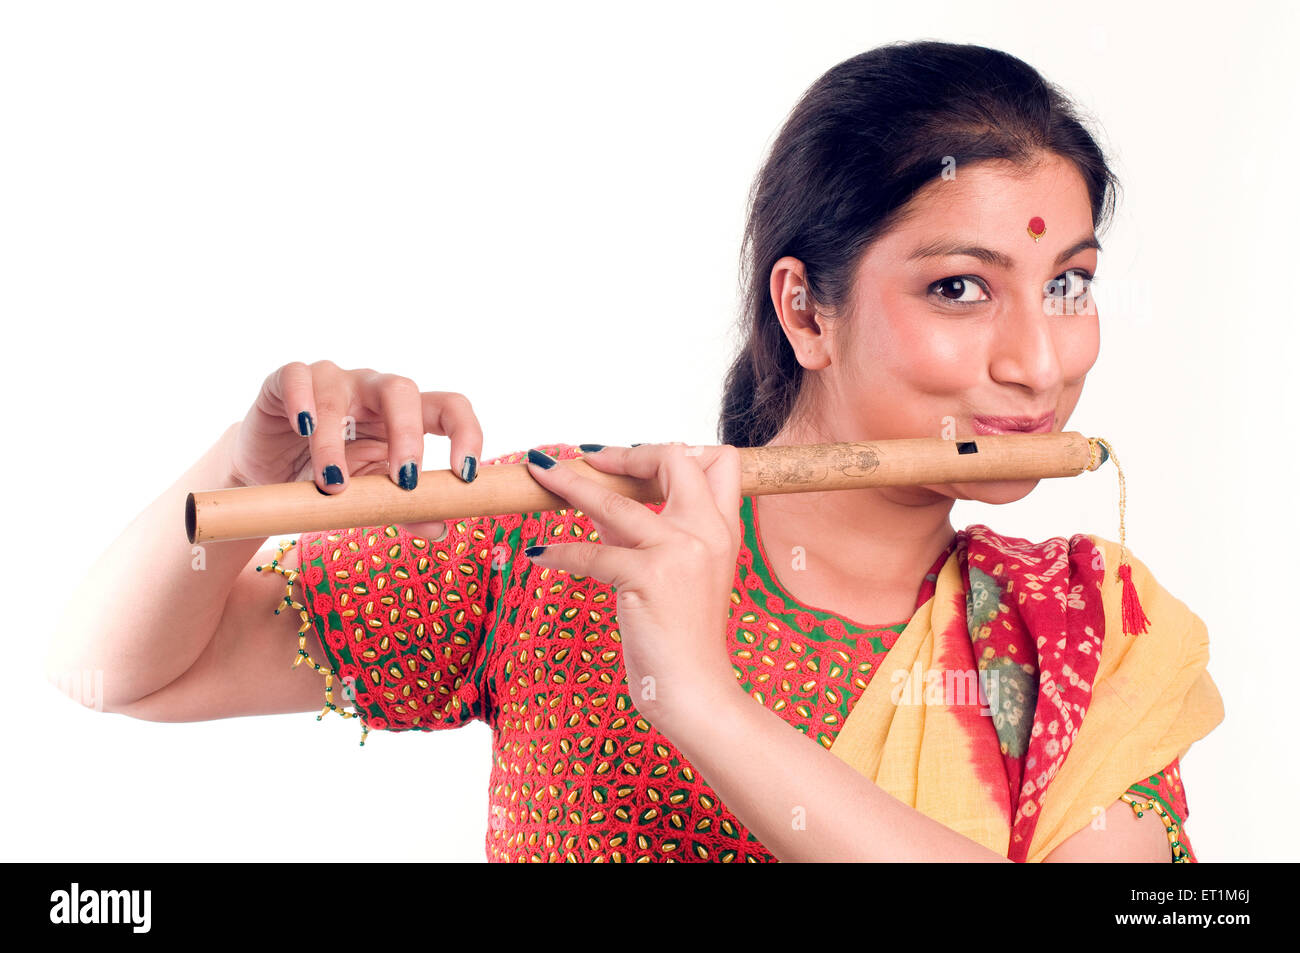 Portrait de jeune fille Maharashtrian jouant flute Pune Maharashtra Inde Asie M. #  686EE Banque D'Images